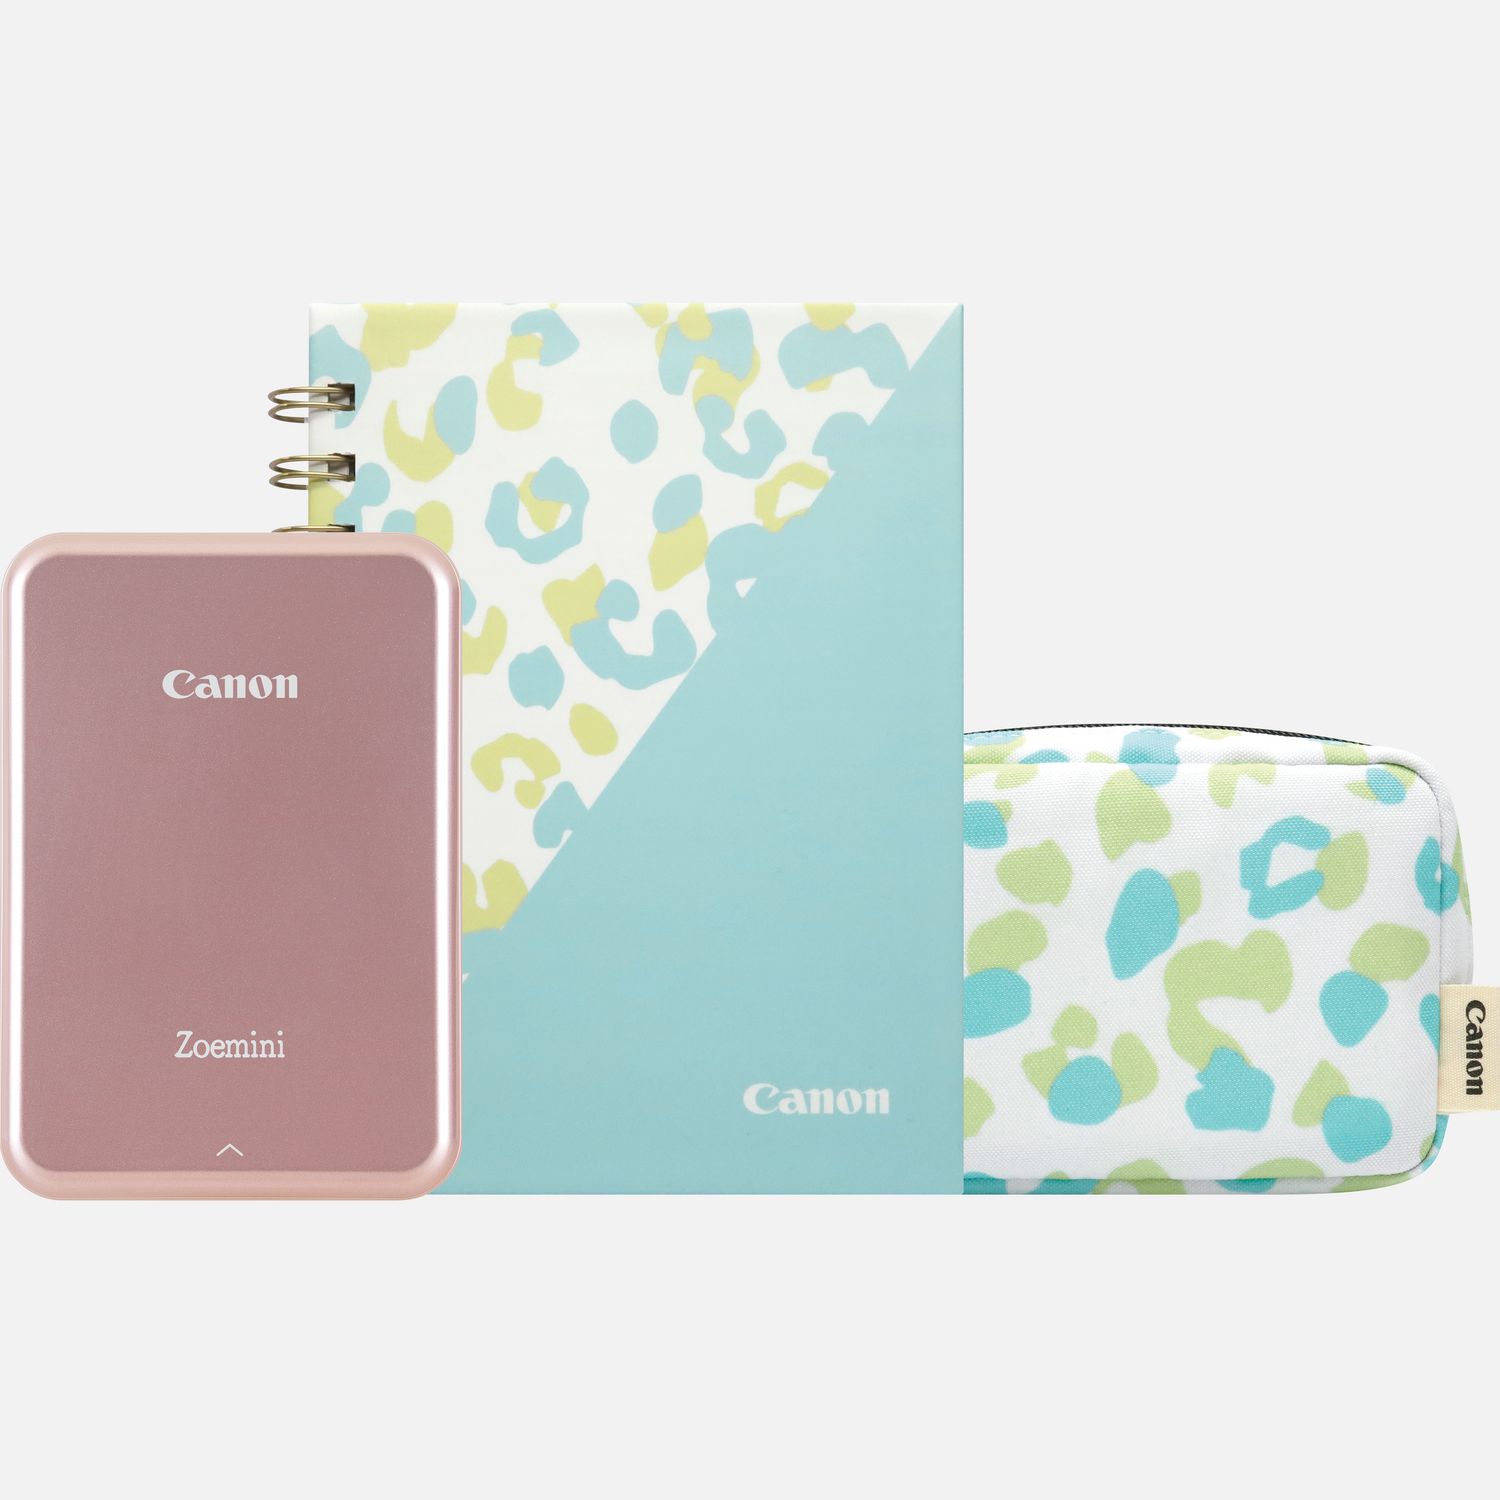 Image of Stampante fotografica portatile a colori Canon Zoemini (oro rosa), diario e custodia